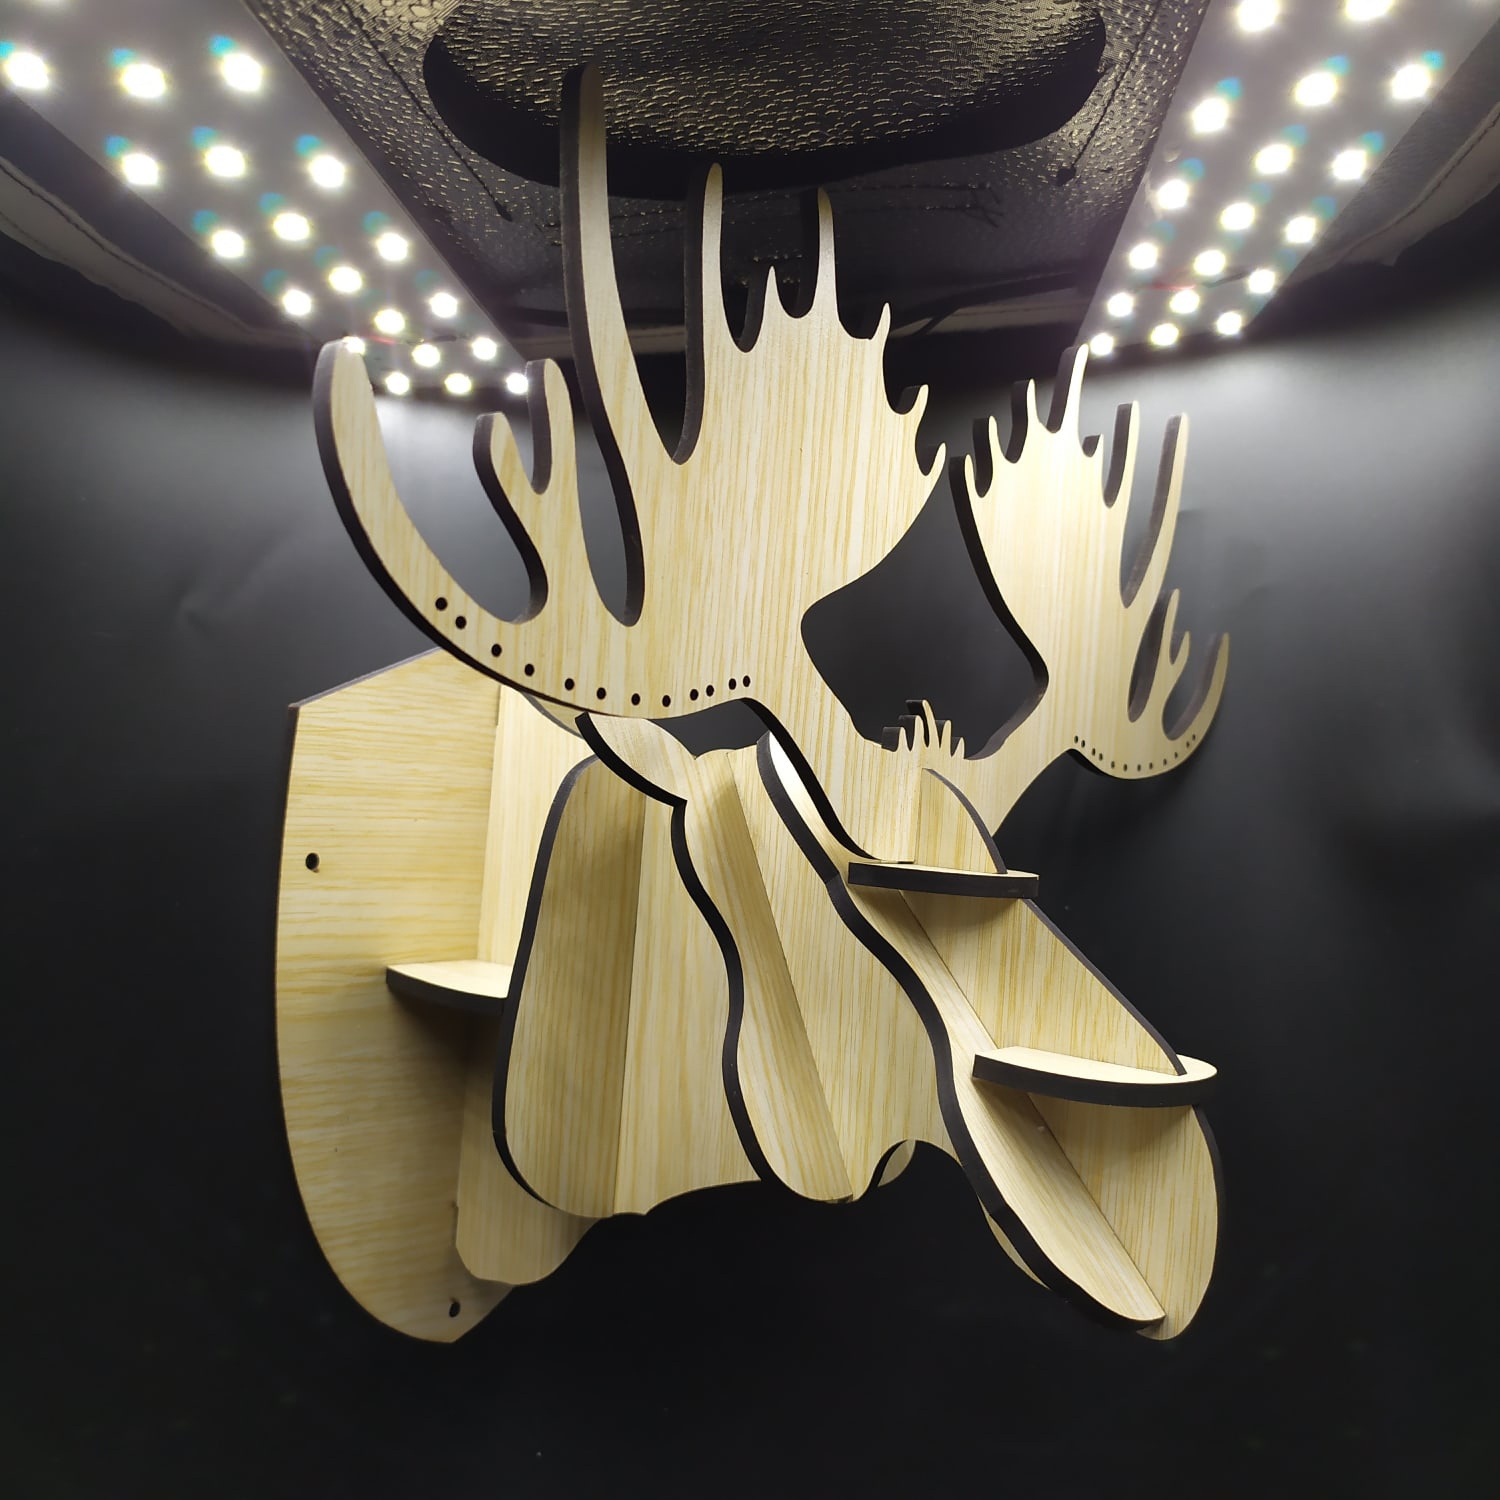 Cabeça de alce corte a laser 3D quebra cabeça decoração de parede cabeça de alce